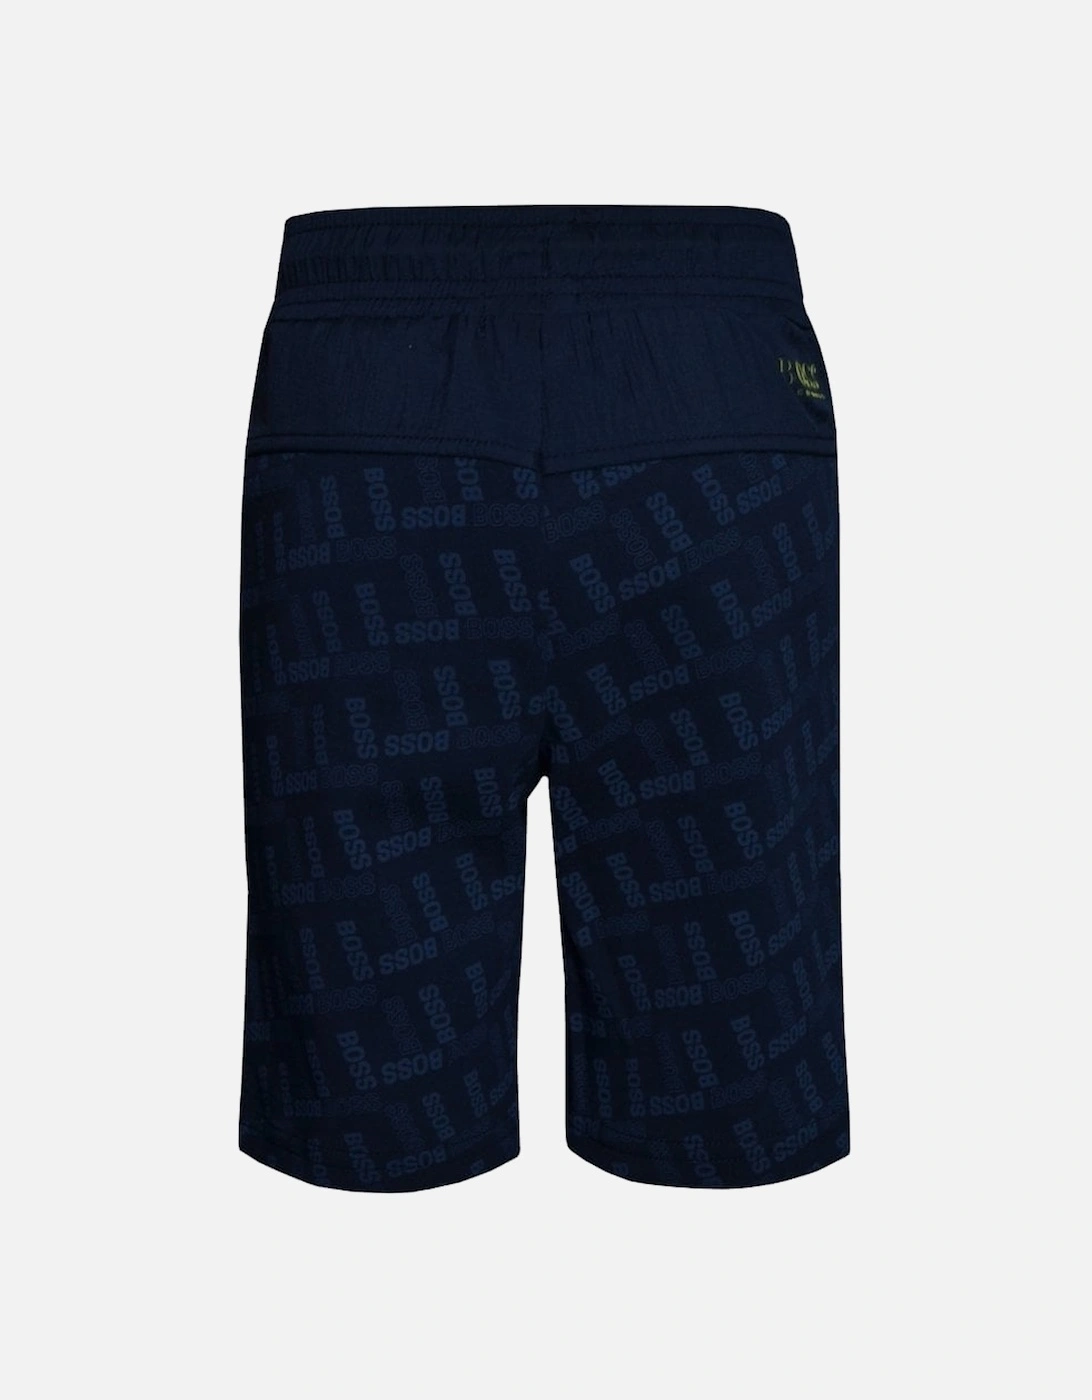 Boy's Navy Shorts